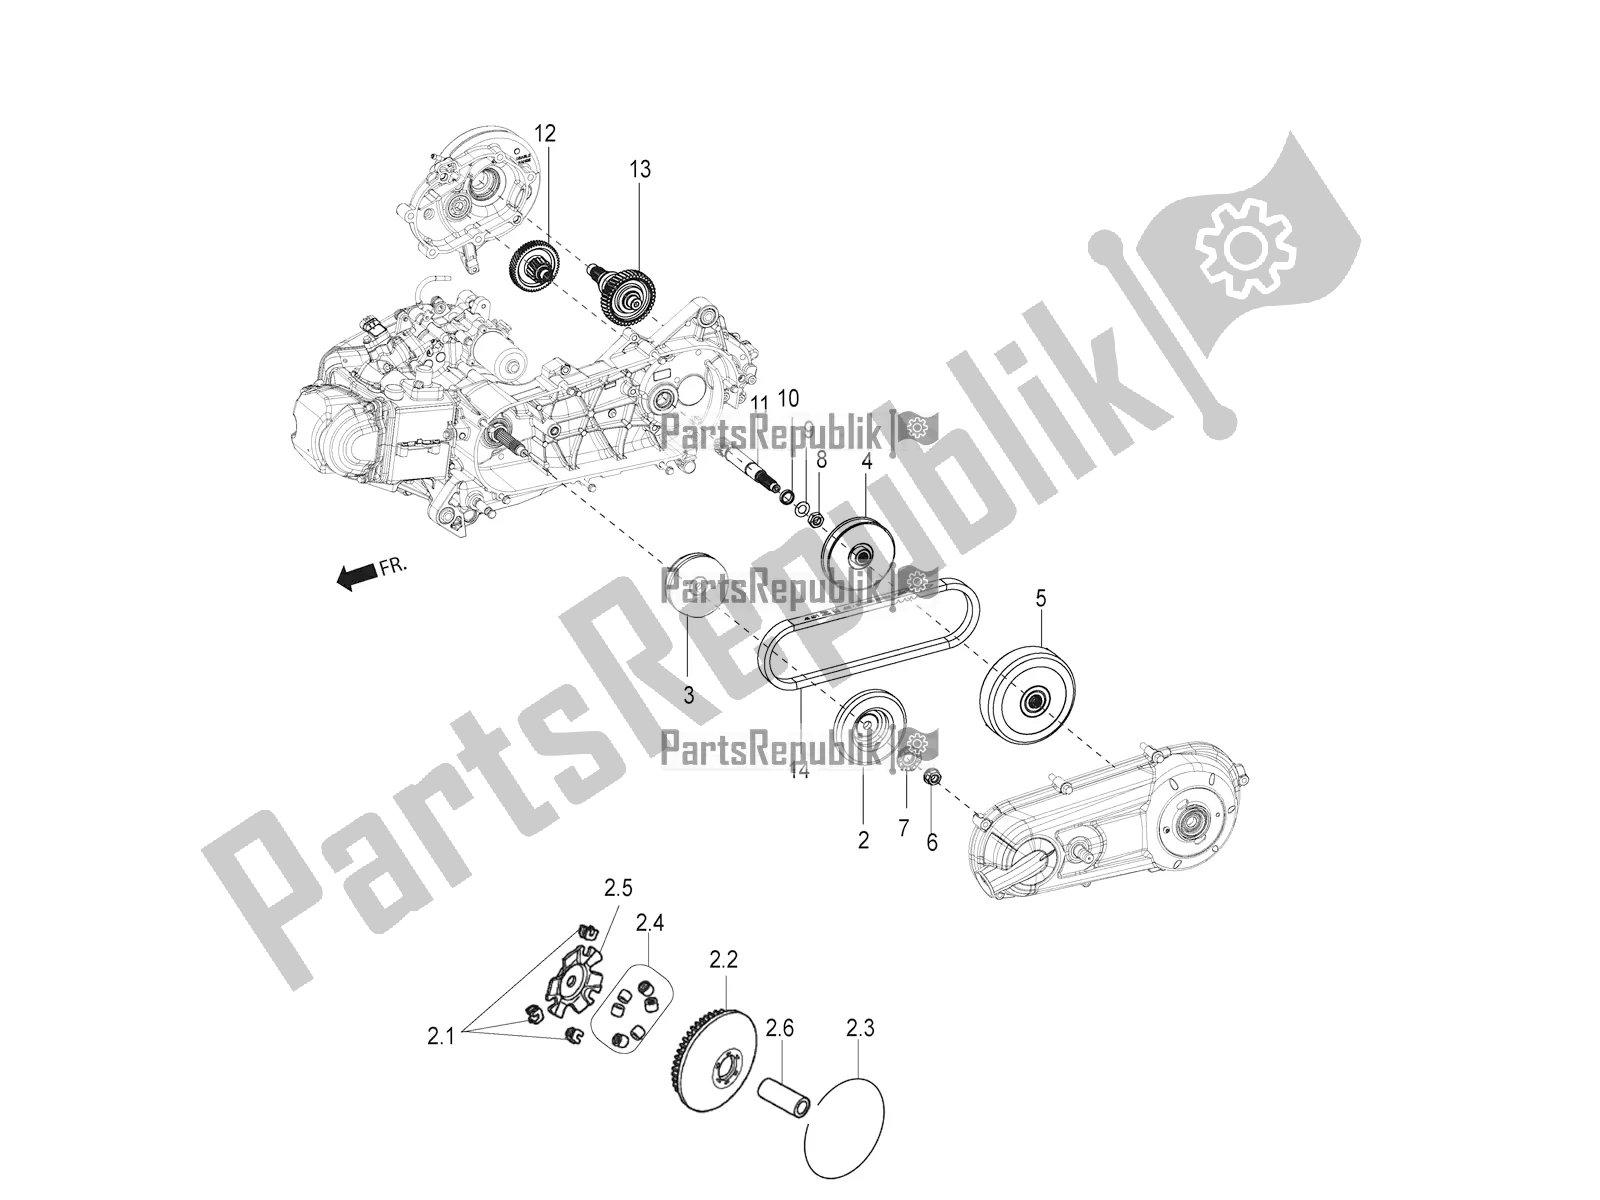 Toutes les pièces pour le Transmission-embrayage du Aprilia SR Motard 150 ABS Racer Carb. Latam 2020